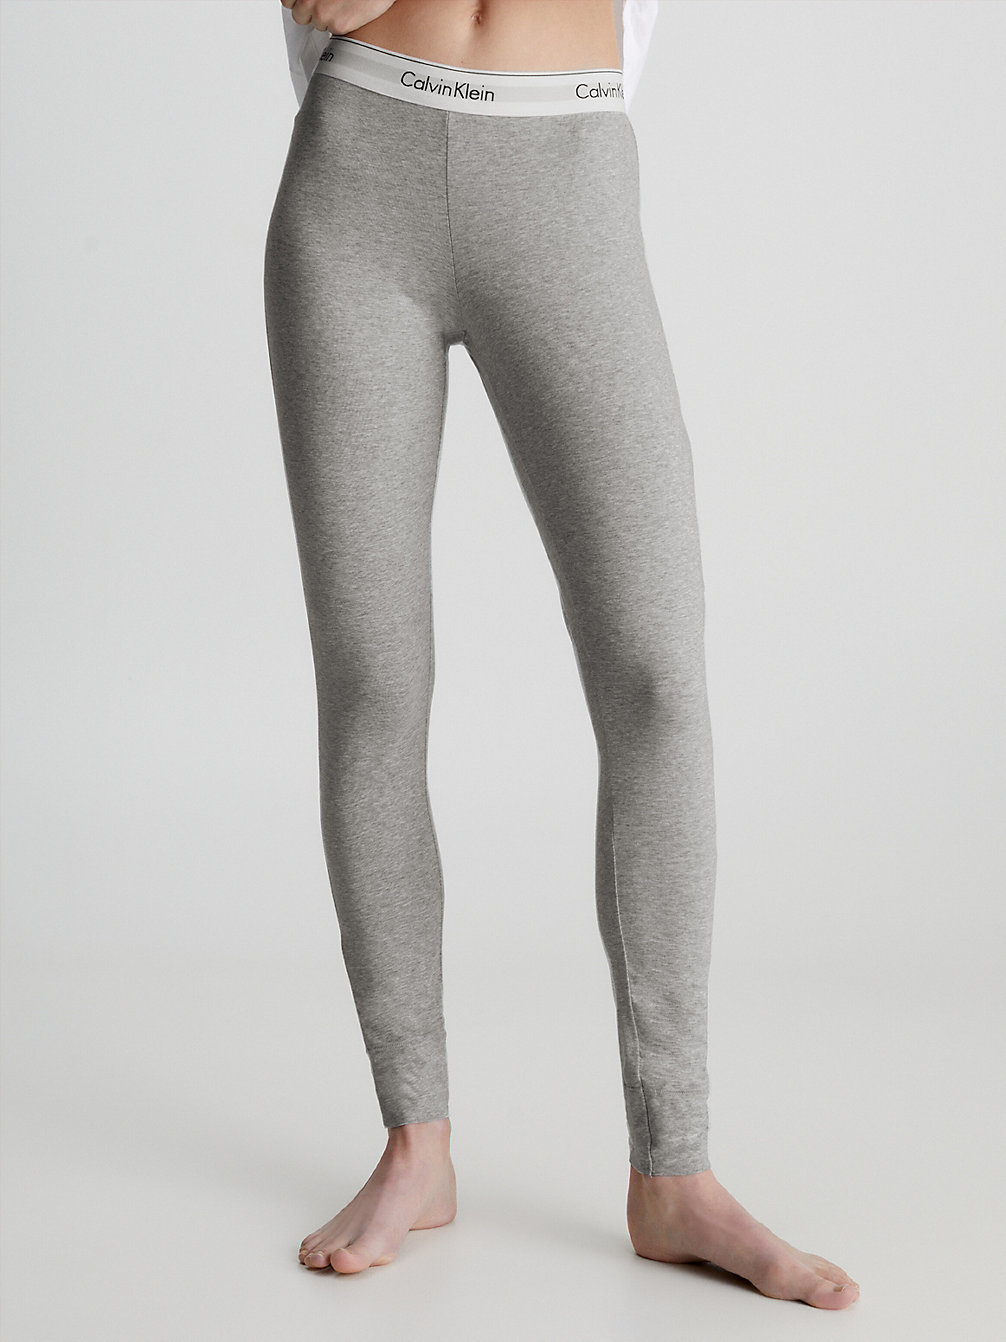 GREY HEATHER Lounge Leggings - Modern Cotton undefined women Calvin Klein